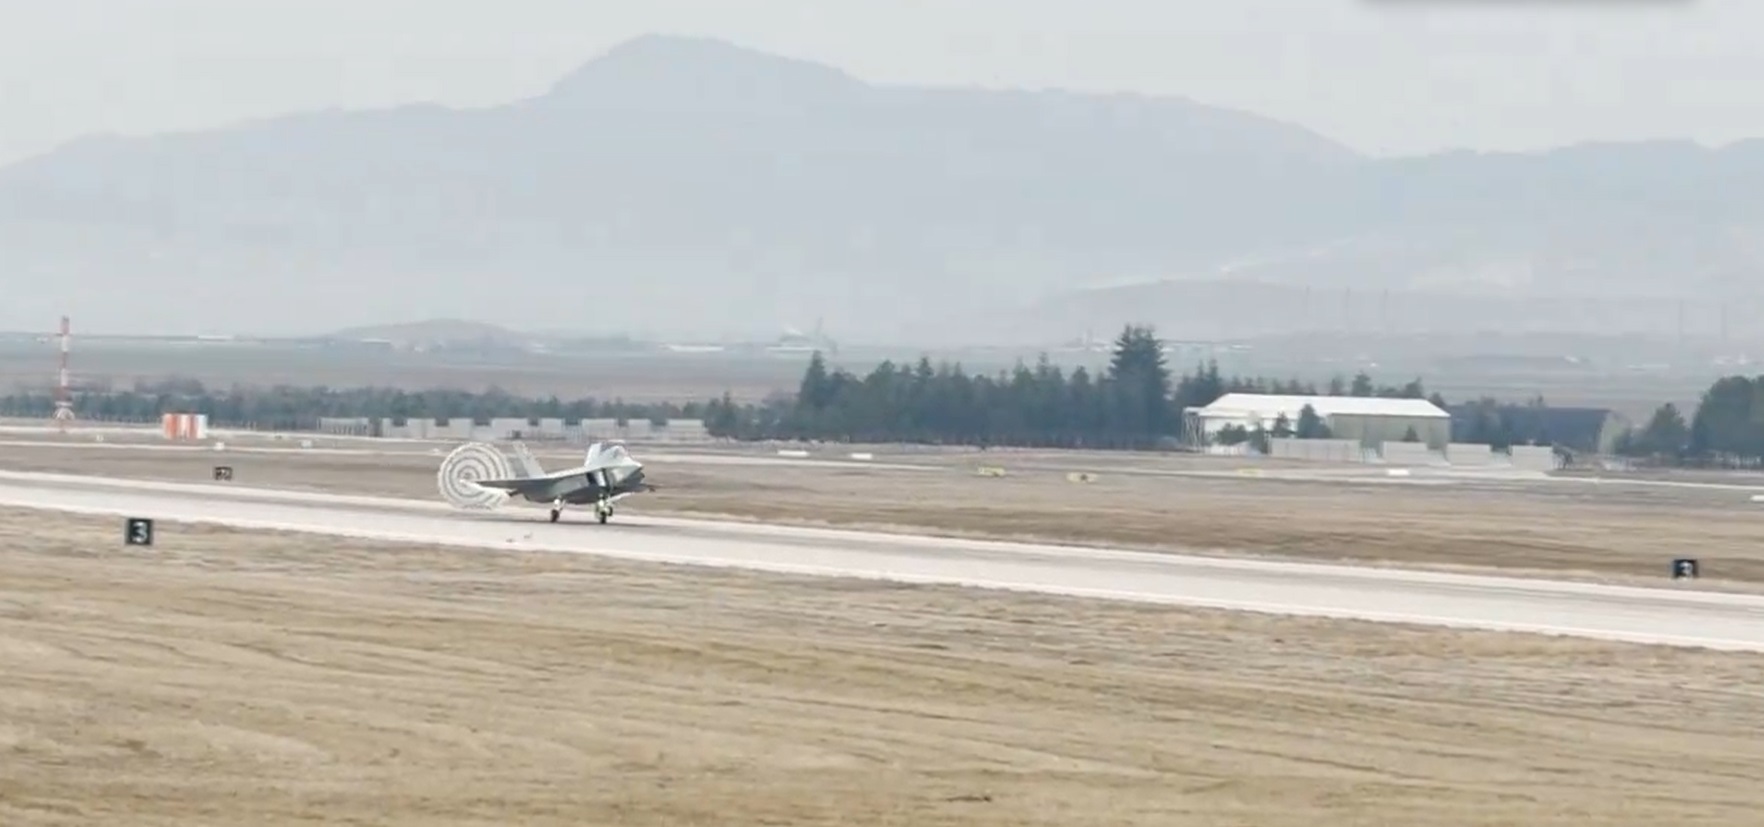 土耳其TAI航太公司:土耳其空軍新型TF-X計畫首架KAAN